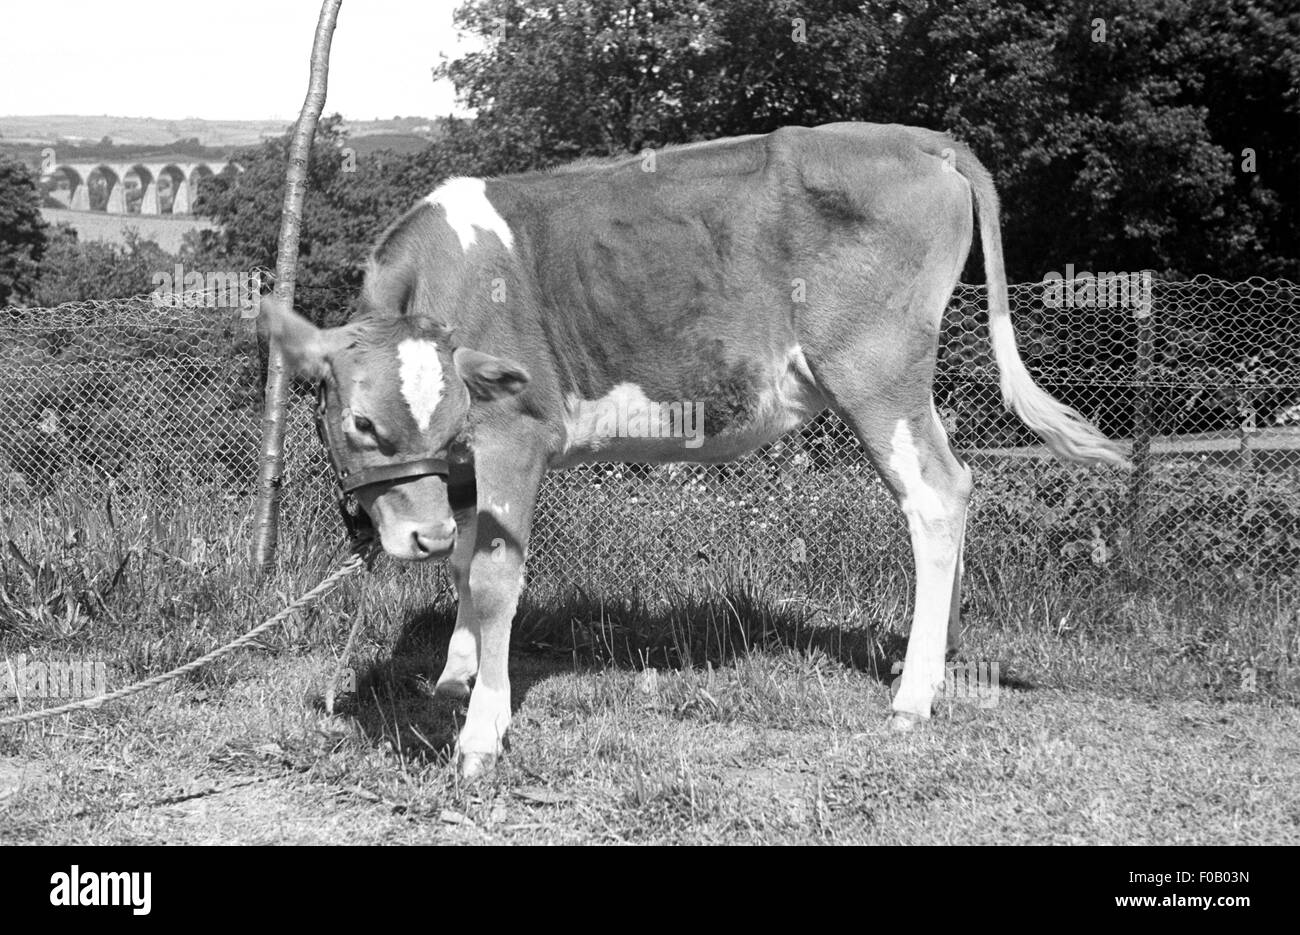 A calf Stock Photo